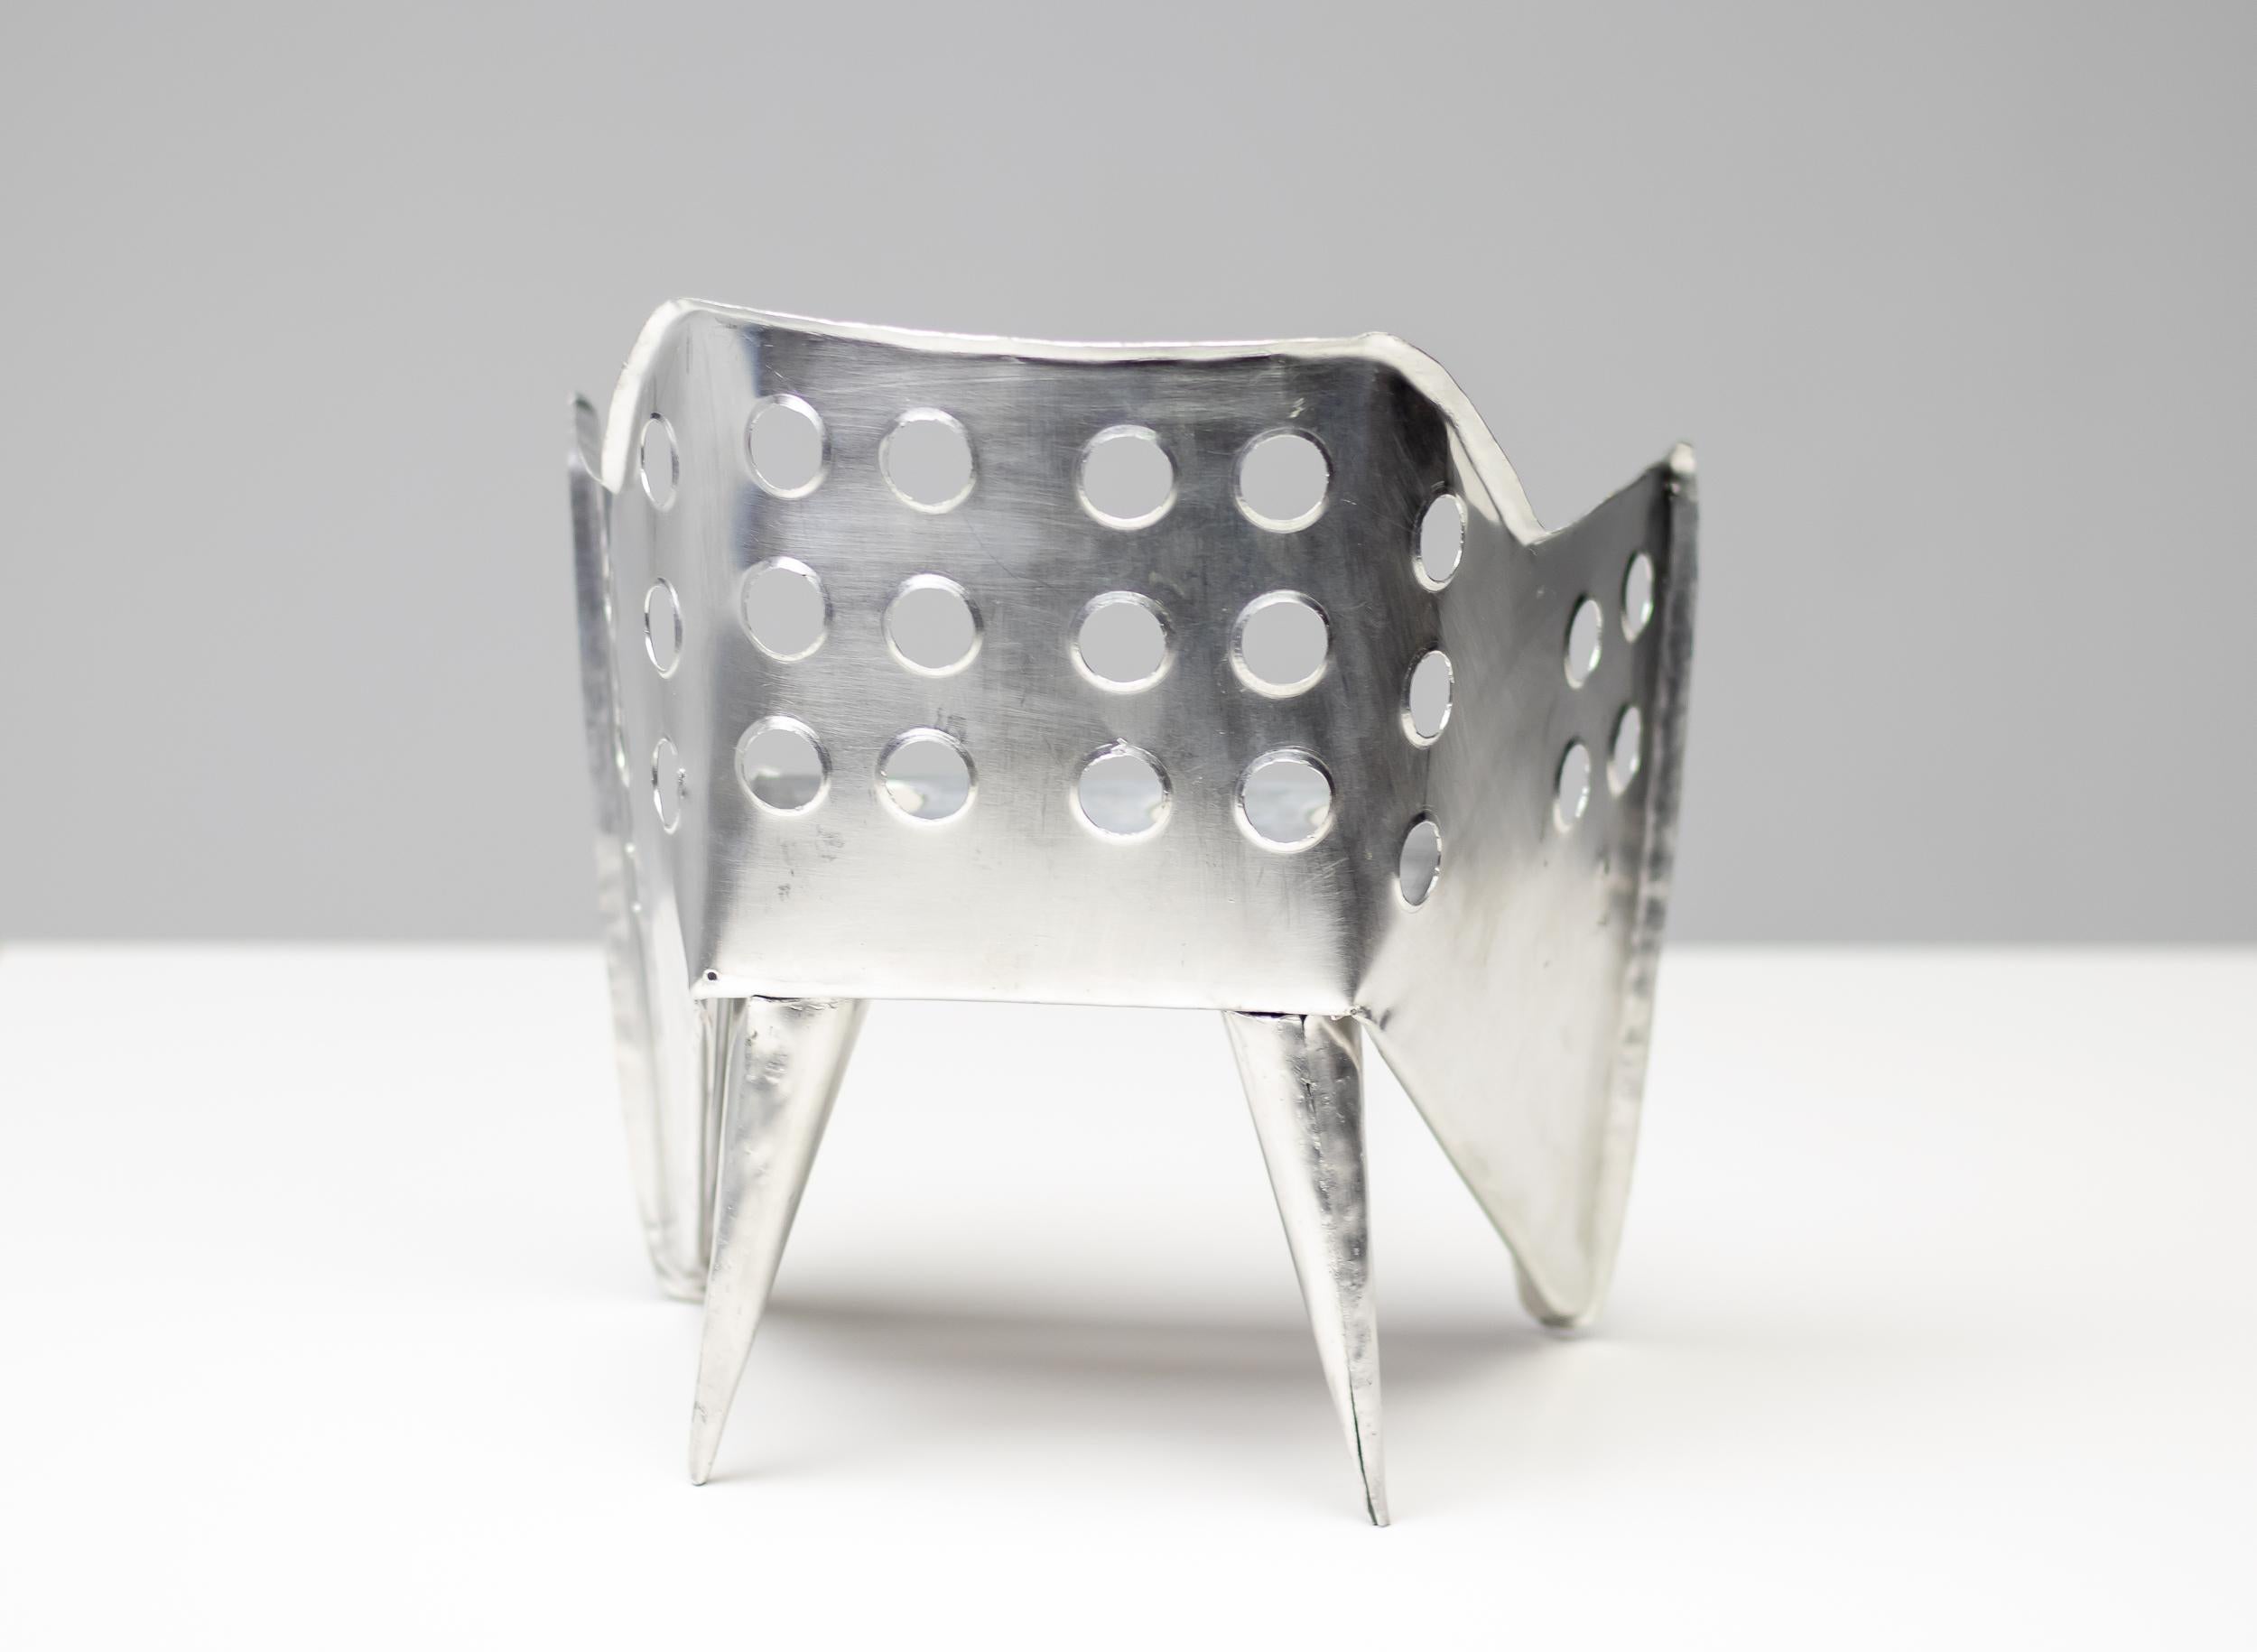 Modèle réduit exceptionnellement bien exécuté à la main de cette chaise très rare conçue par Gerrit Rietveld.
Non marqué. Si vous cherchez désespérément le cadeau idéal pour un architecte, ne cherchez plus !

Gerrit Rietveld (1888-1964), architecte